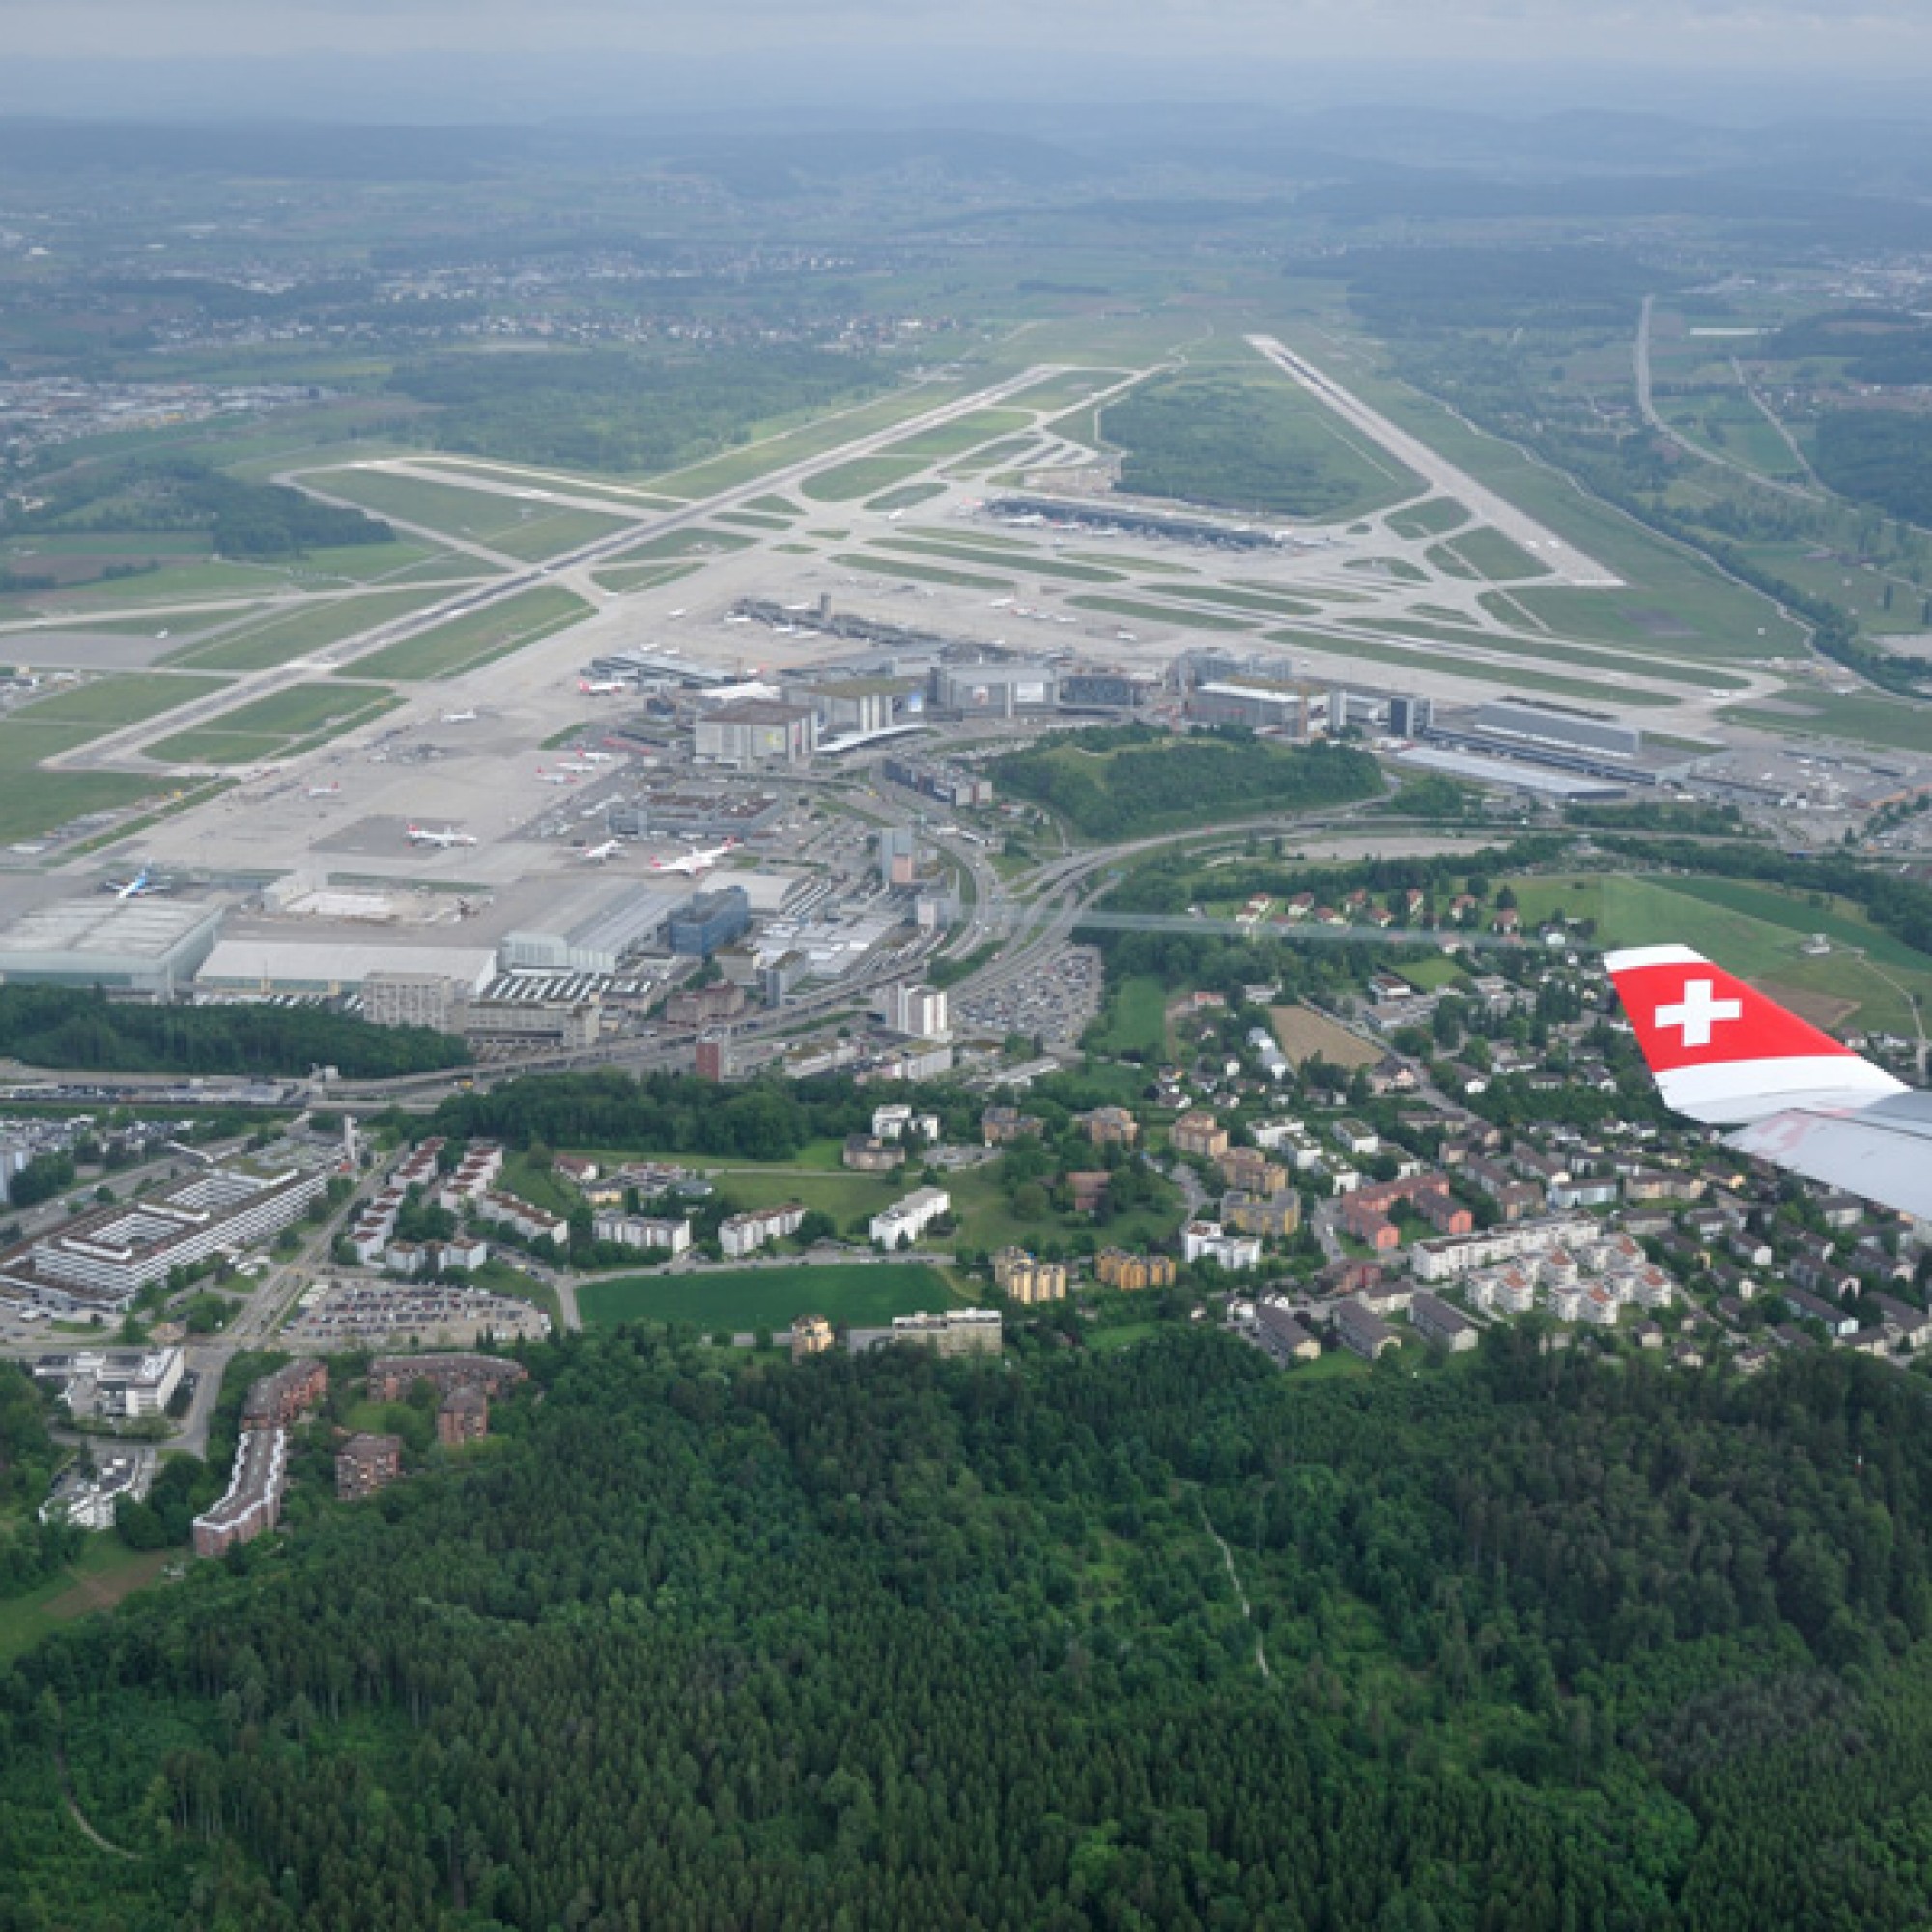 Flughafen Zürich (www.wikimedia.org, Simisa, CC)